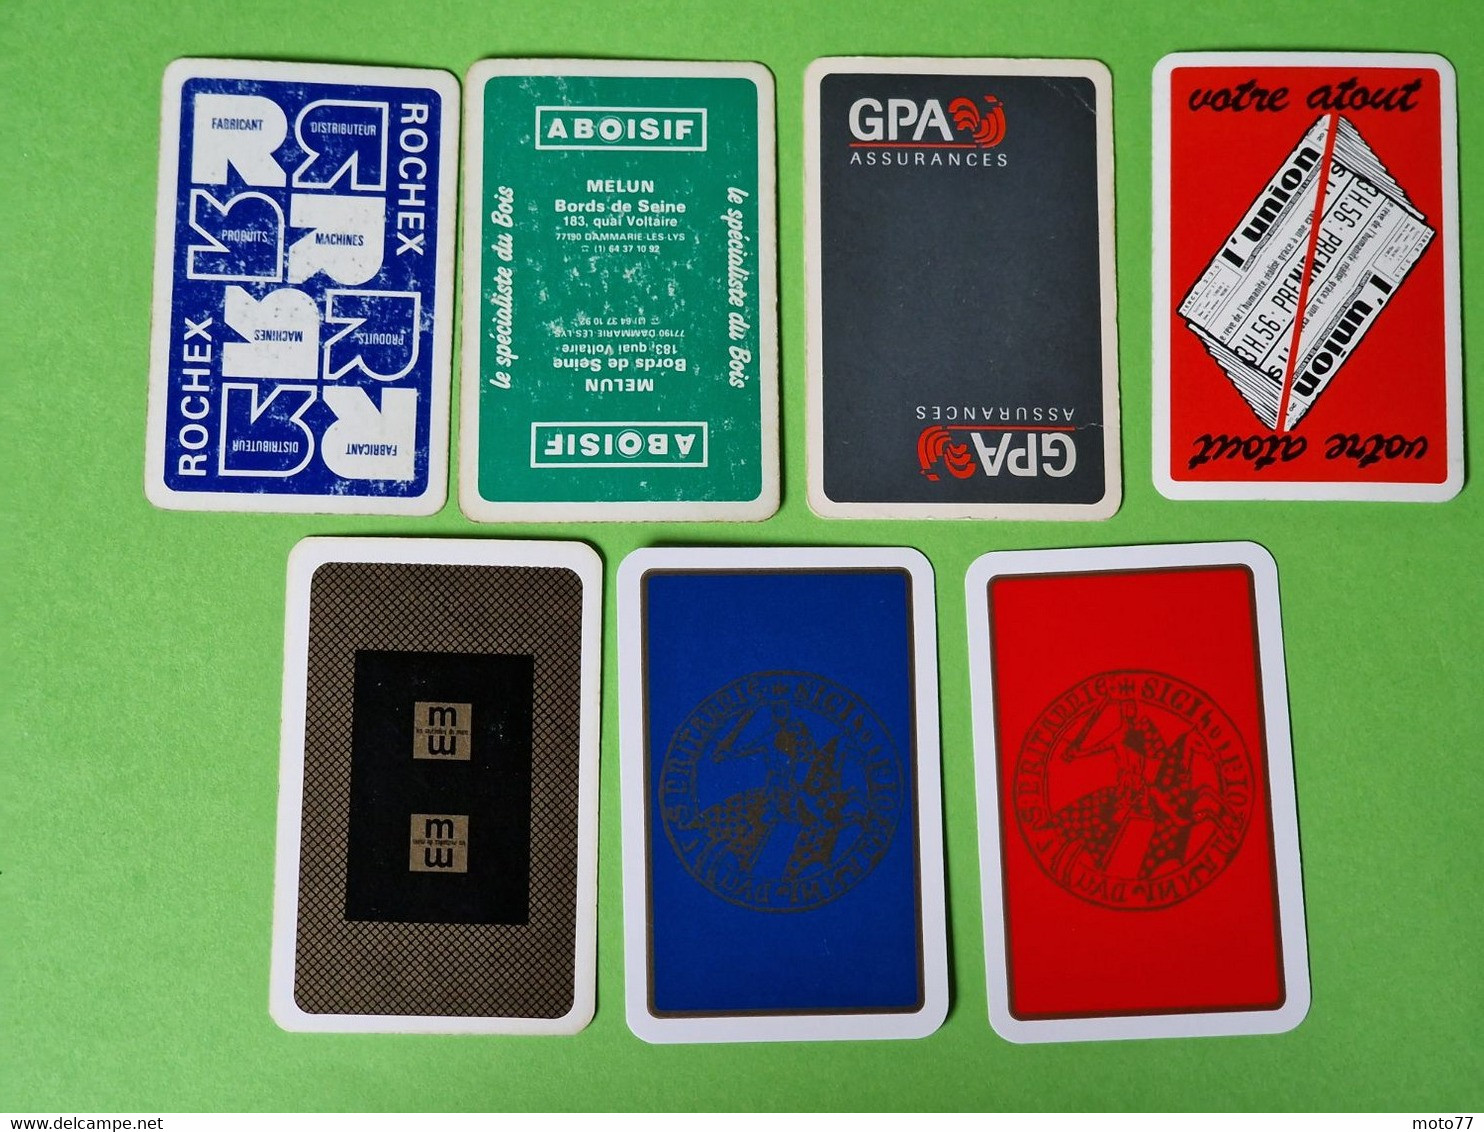 Lot 7 Cartes à Jouer - DAME De PIQUE - Dos Bleu,Rouge - Pub L'UNION Reims, ABOISIF, GPA, M&M, ROCHEX - Vers 1990/2000 - 32 Cards